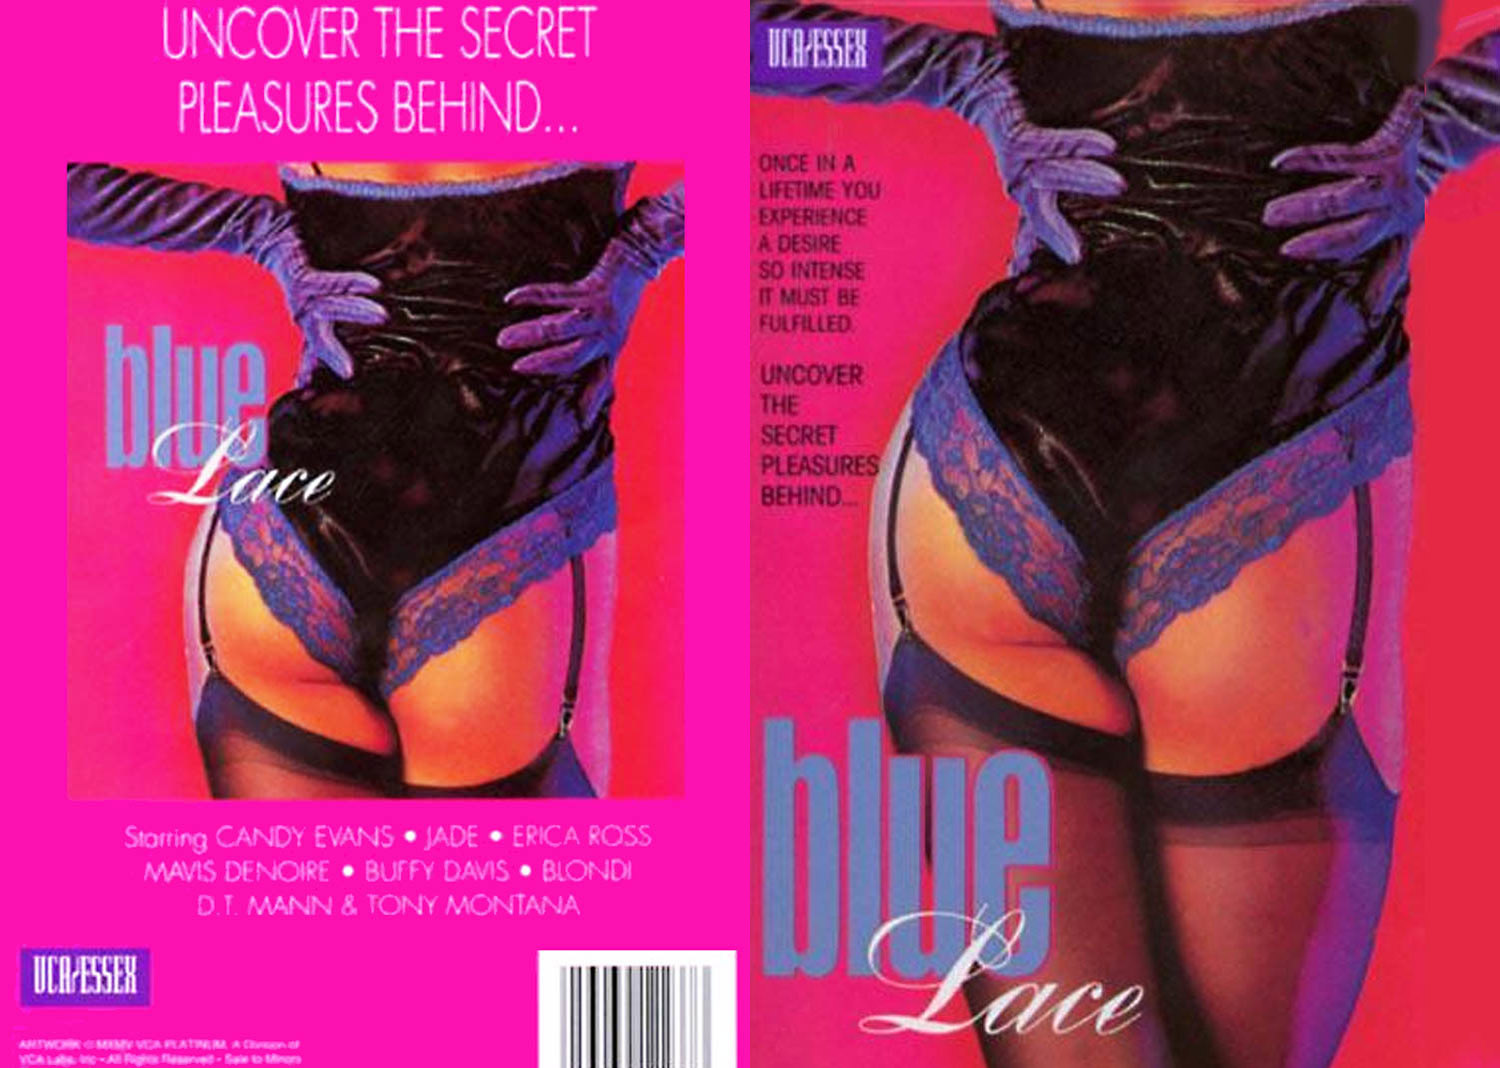 Blue Lace – 1986